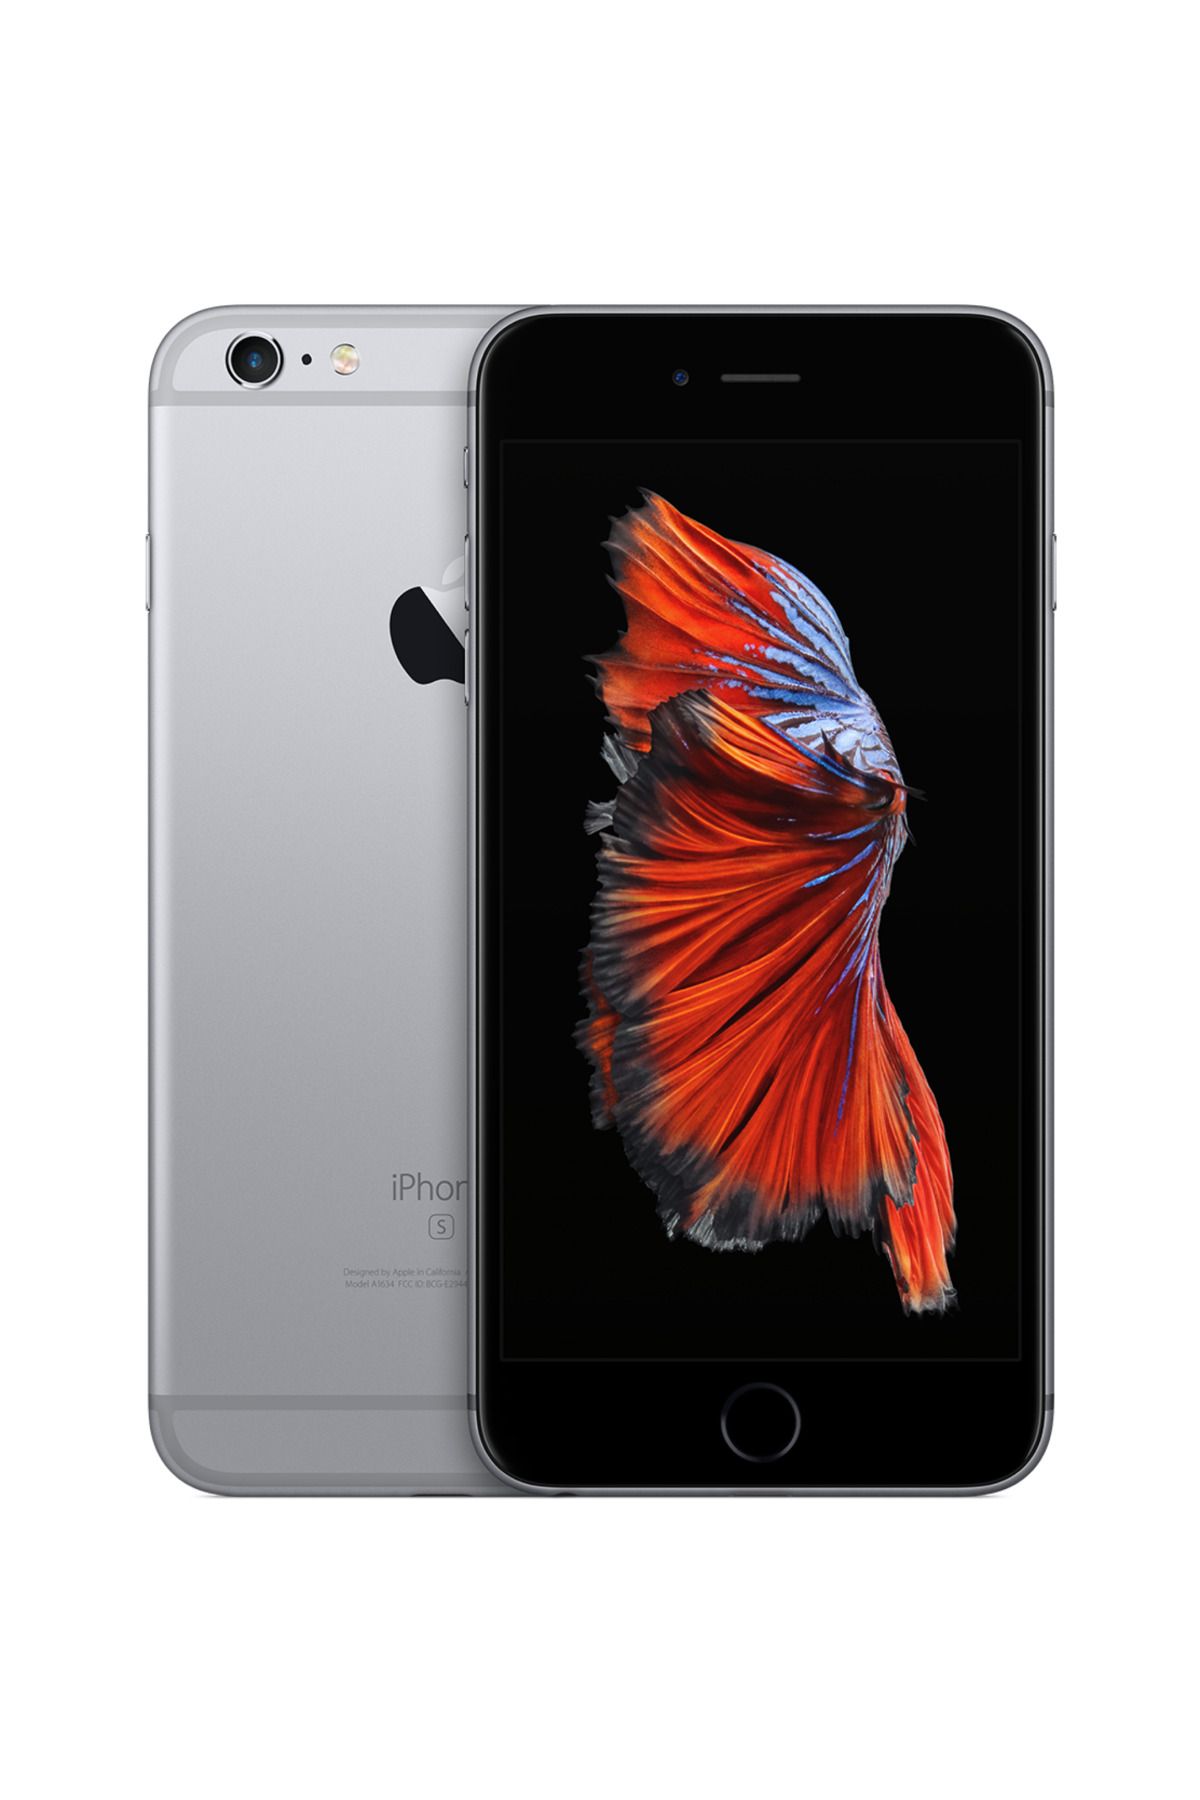 Apple iPhone 6s Plus Altın 64GB - Yenilenmiş - Yenilio Outlet